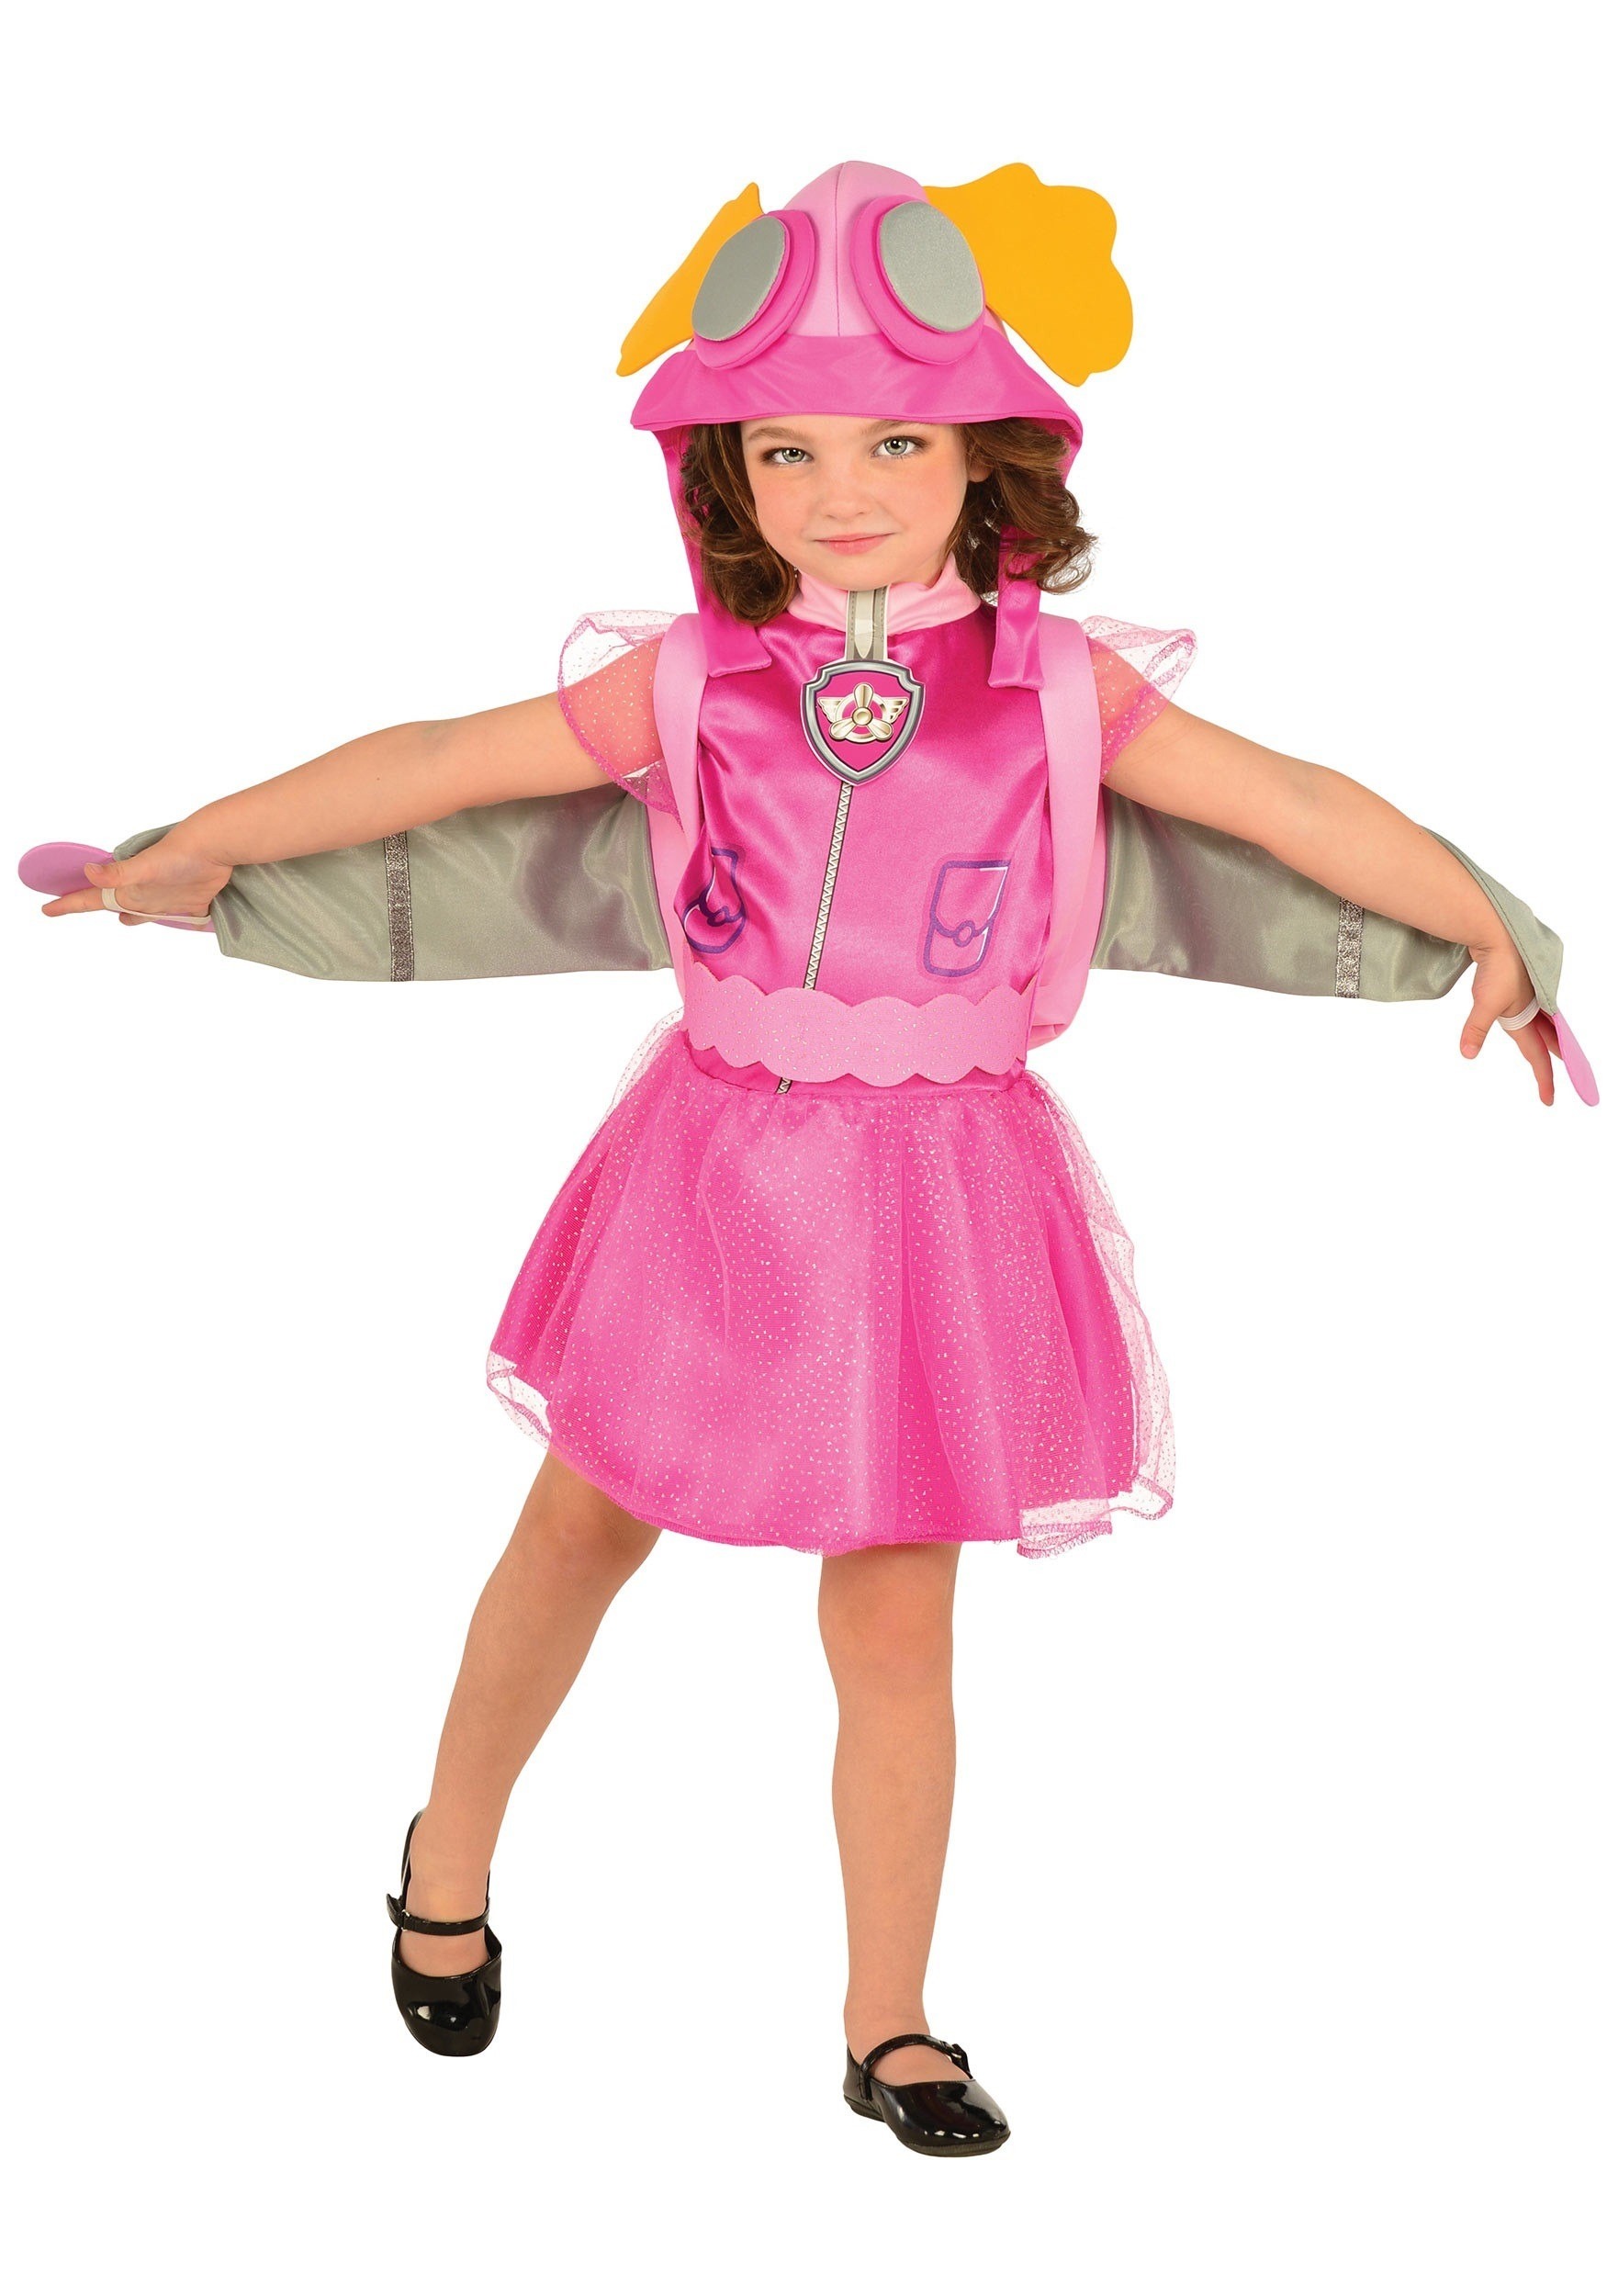 Paw Patrol Movie Skye Deluxe Toddler/Kid's Costume